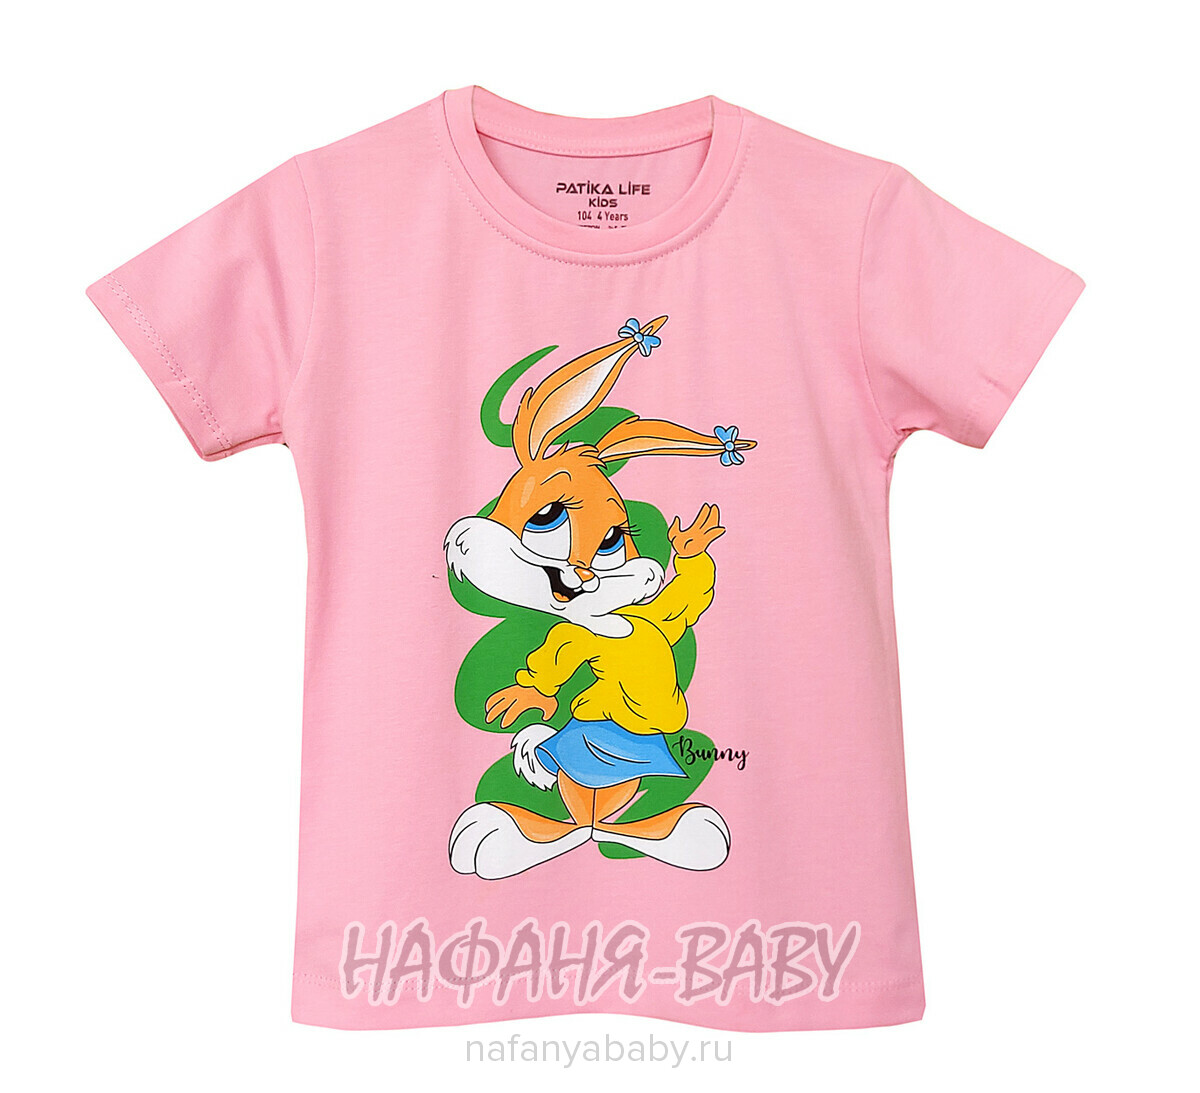 Детская футболка PATIKA арт. 4219 для девочки 1-4 года, цвет розовый, оптом Турция